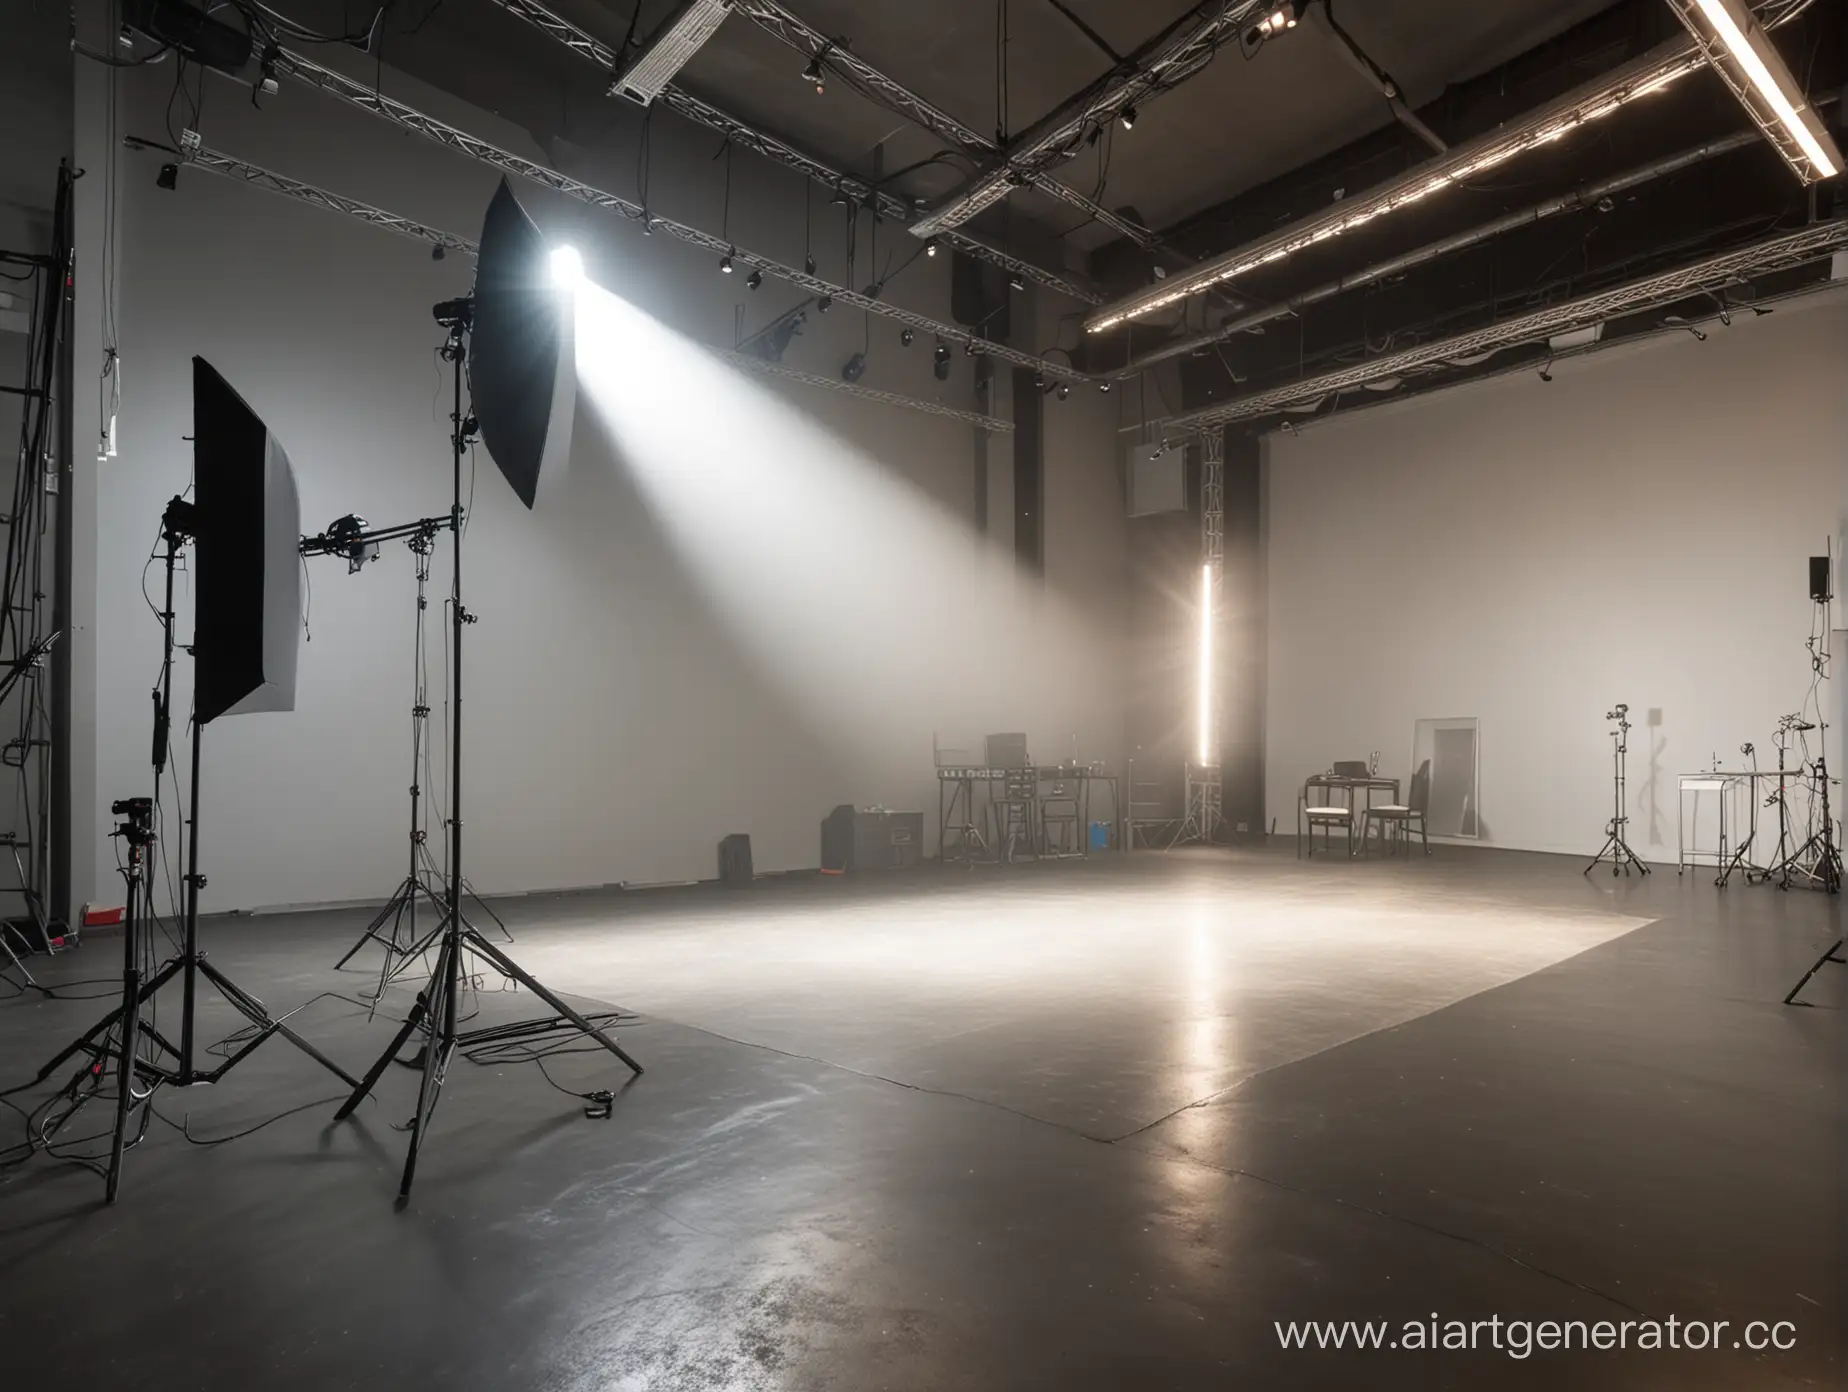 большая студия со сценой и большим количеством света и оборудования для съёмок 